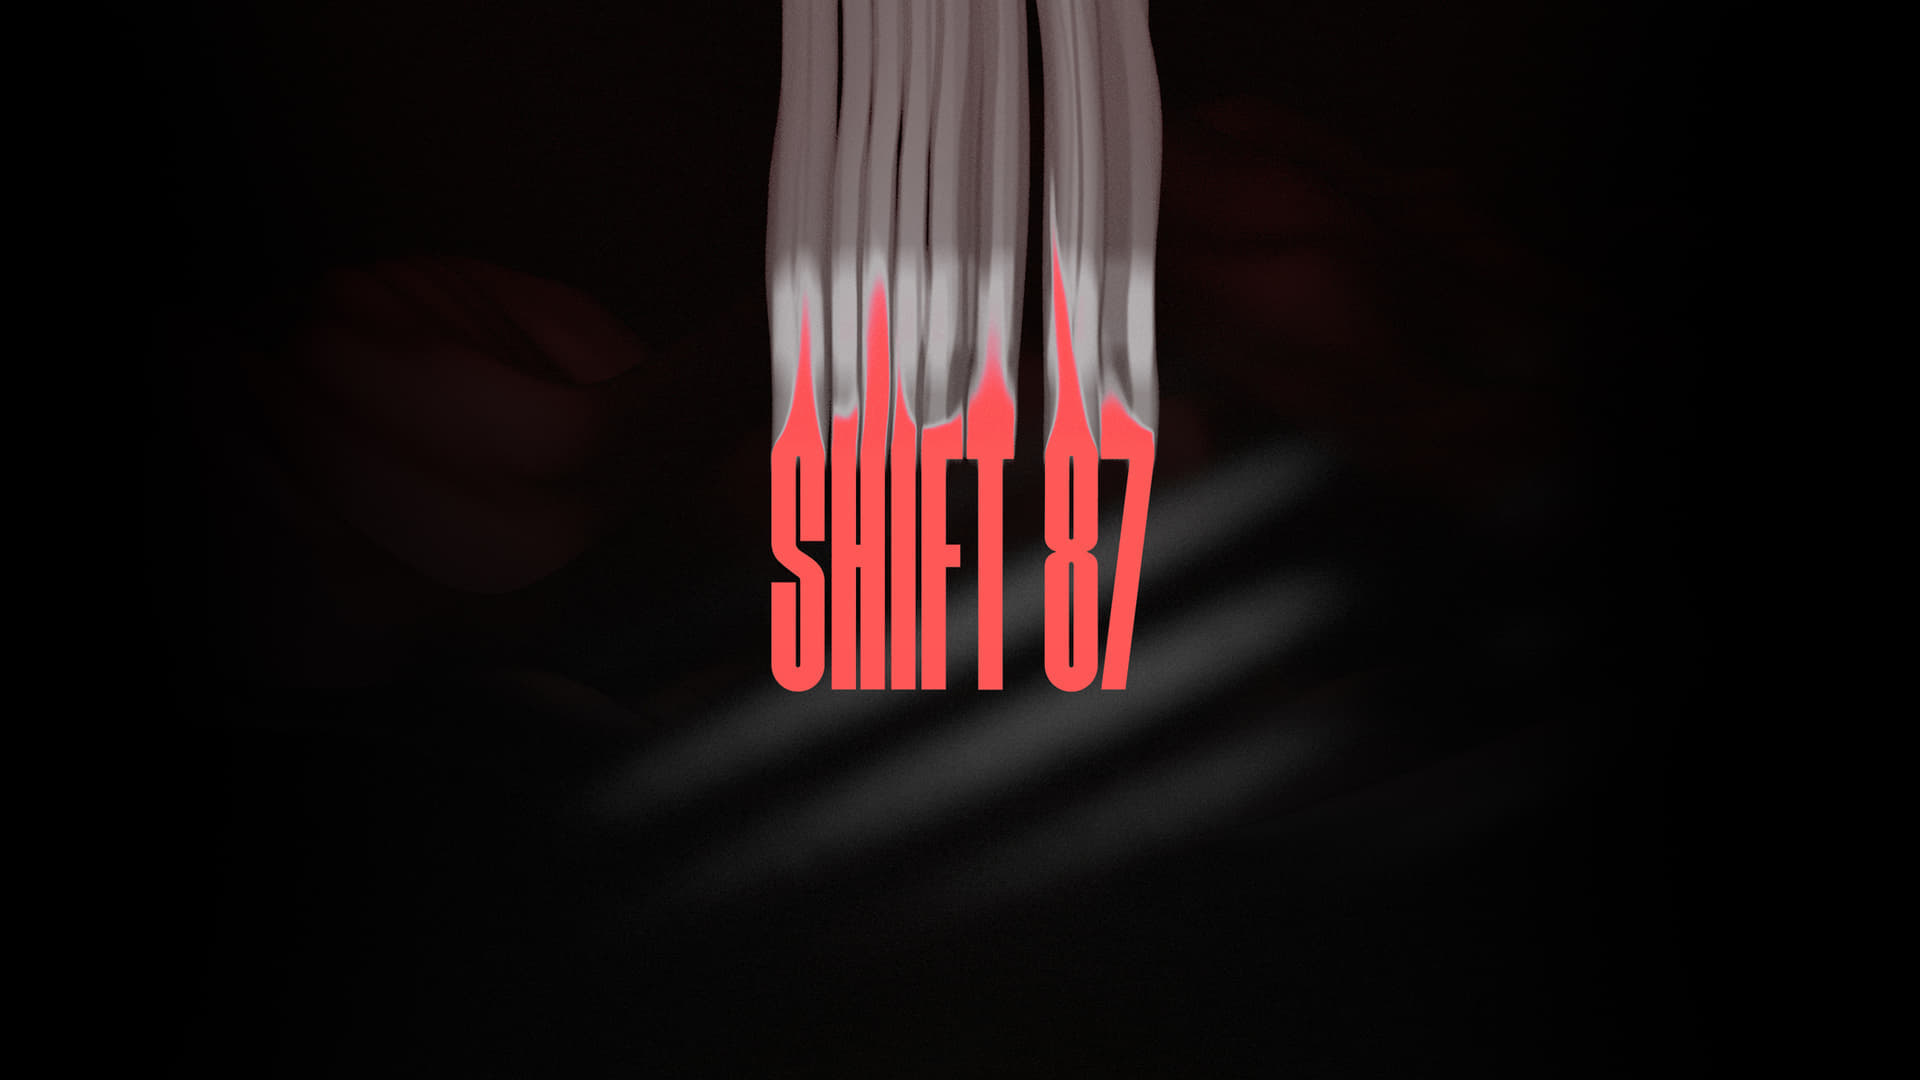 『Shift87』が7月24日に発売。変な形のデバイスを持って全エリア66個の異常を観察＆報告_004